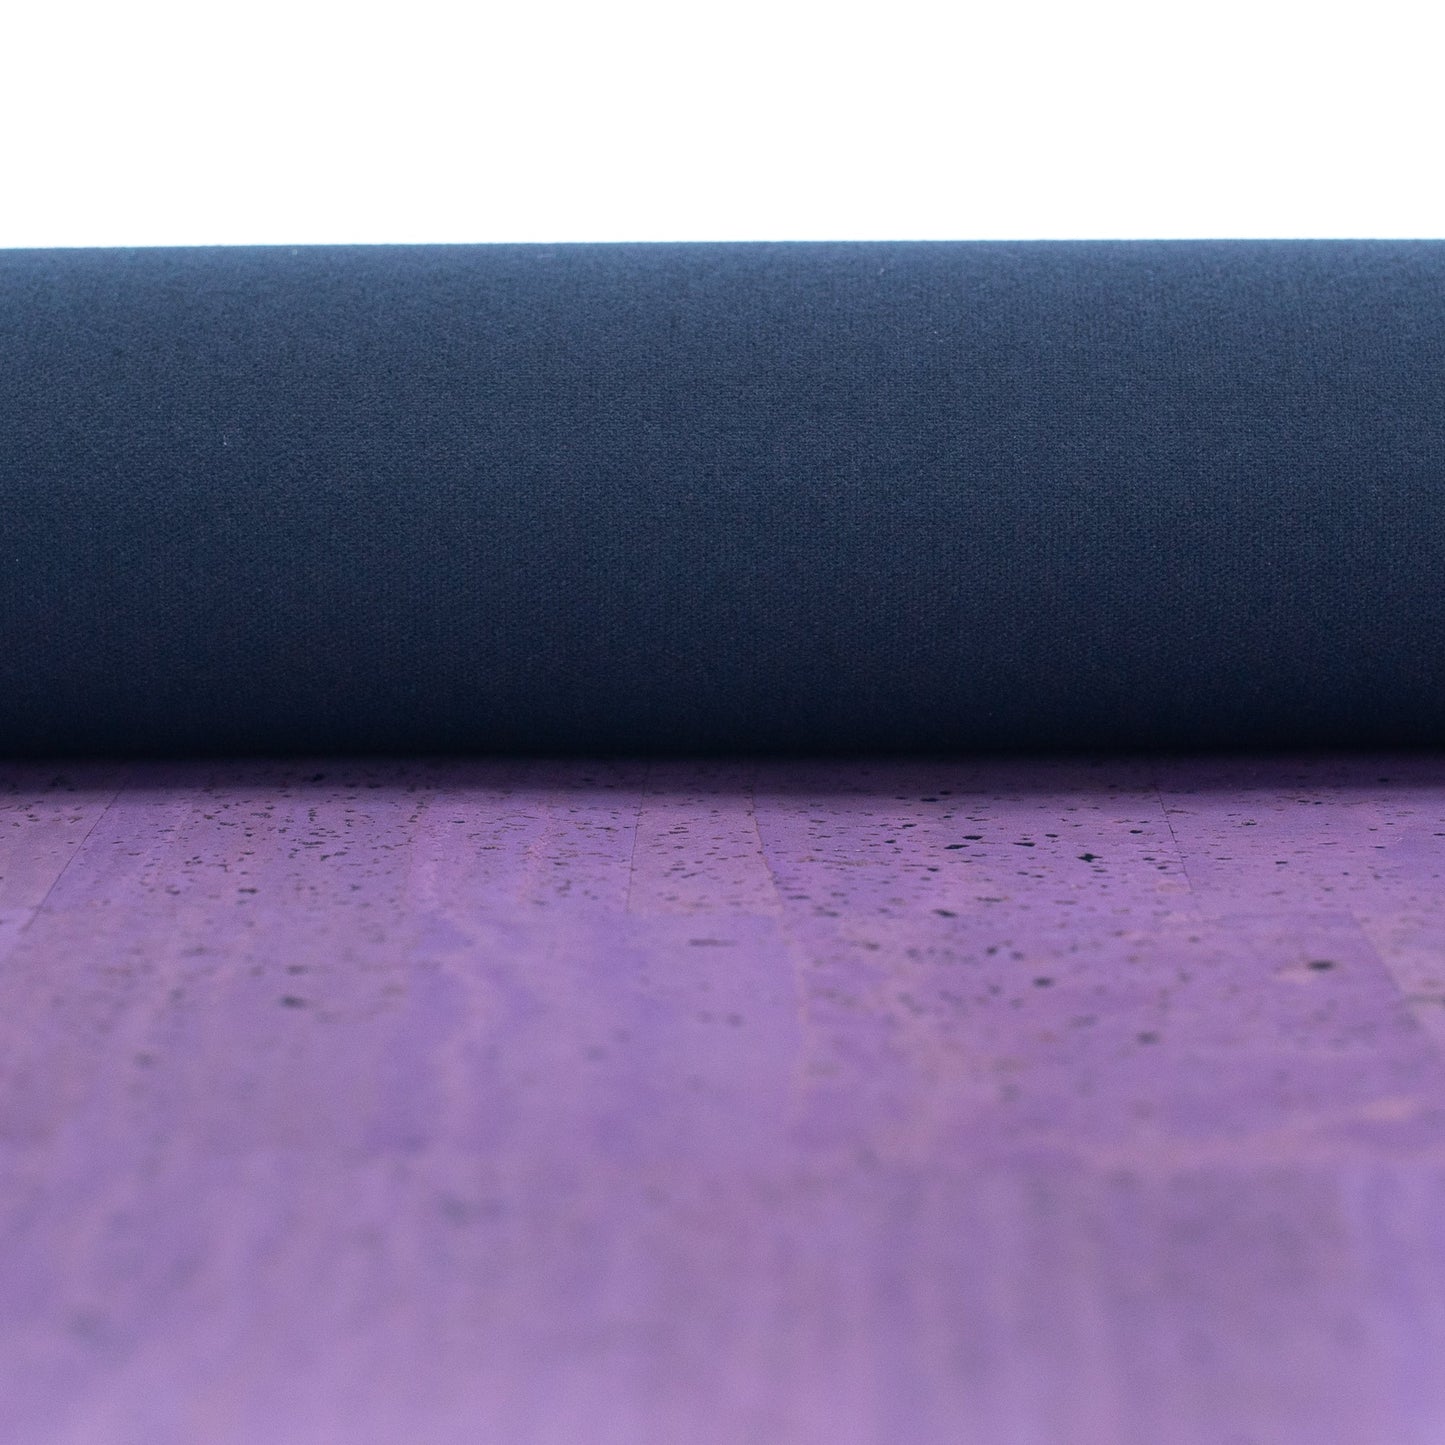 Premium Solid Purple Cork Fabric COF-303